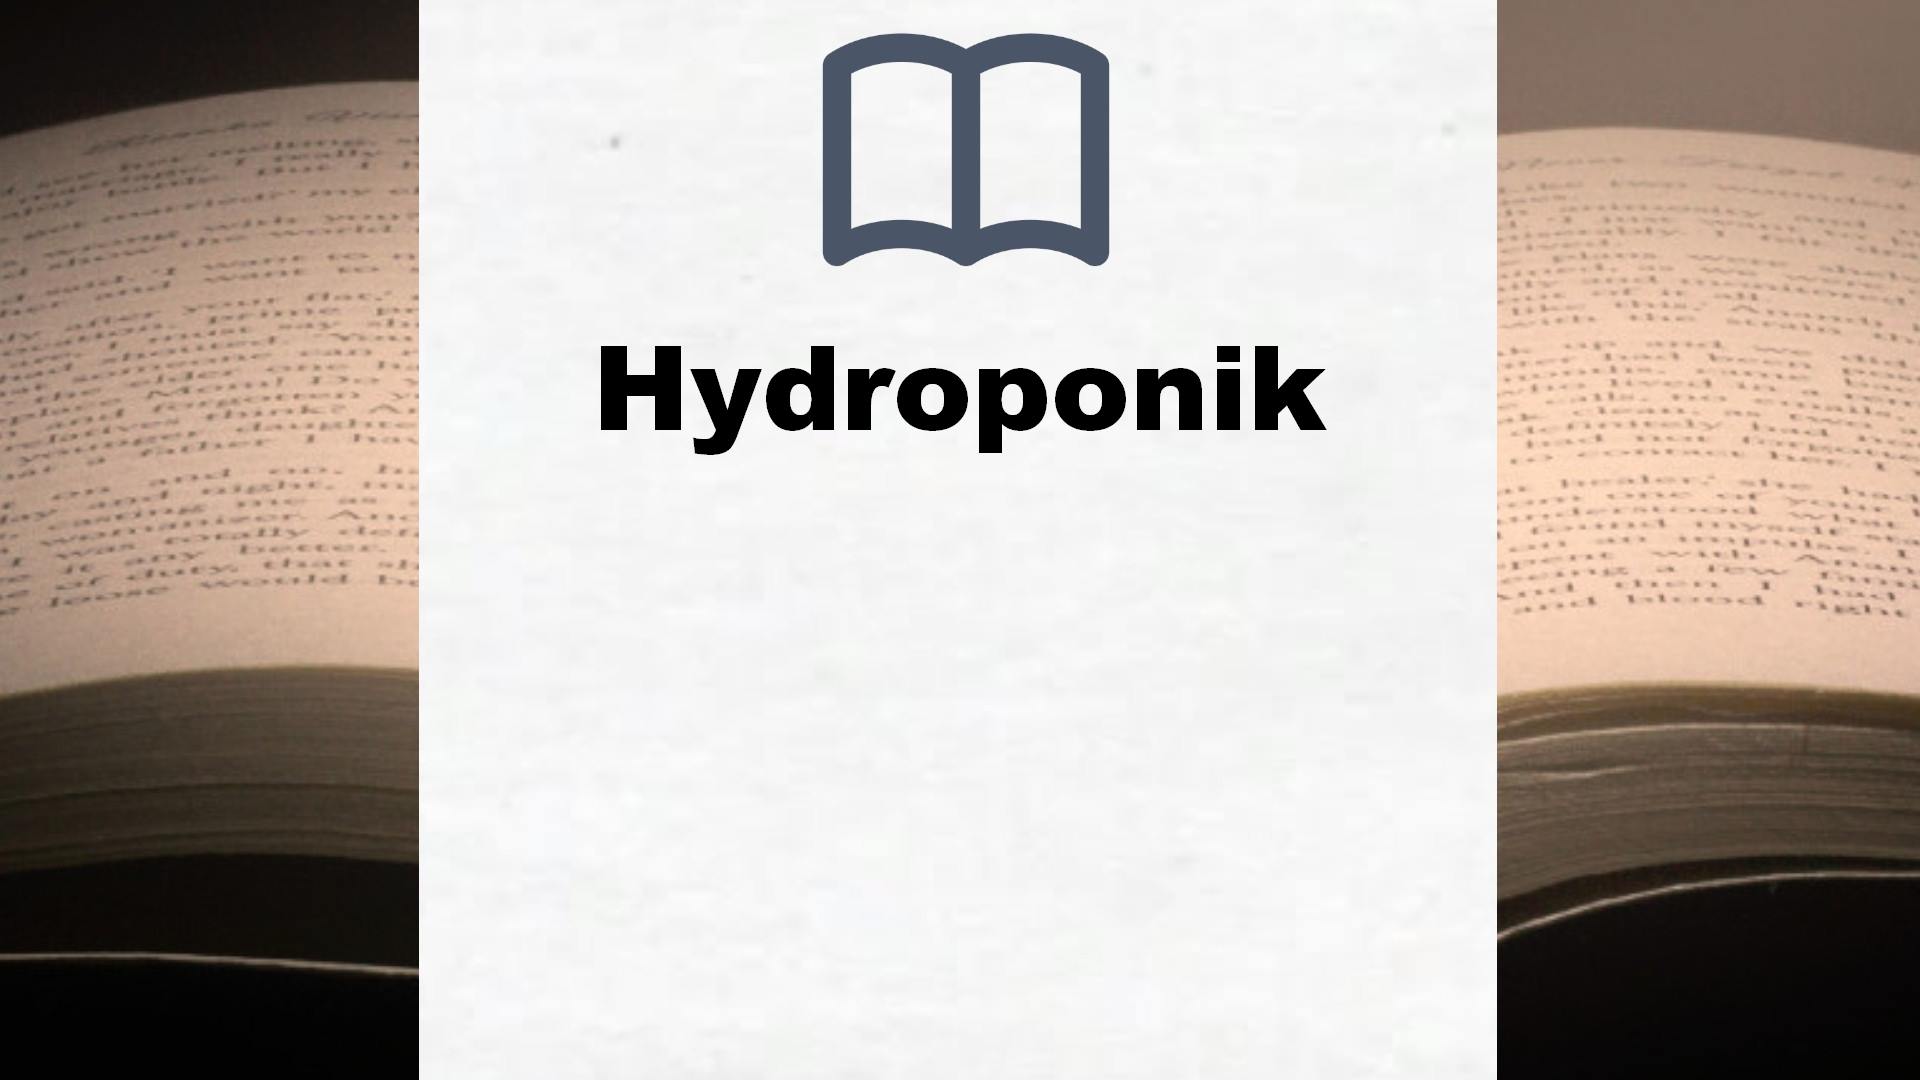 Bücher über Hydroponik